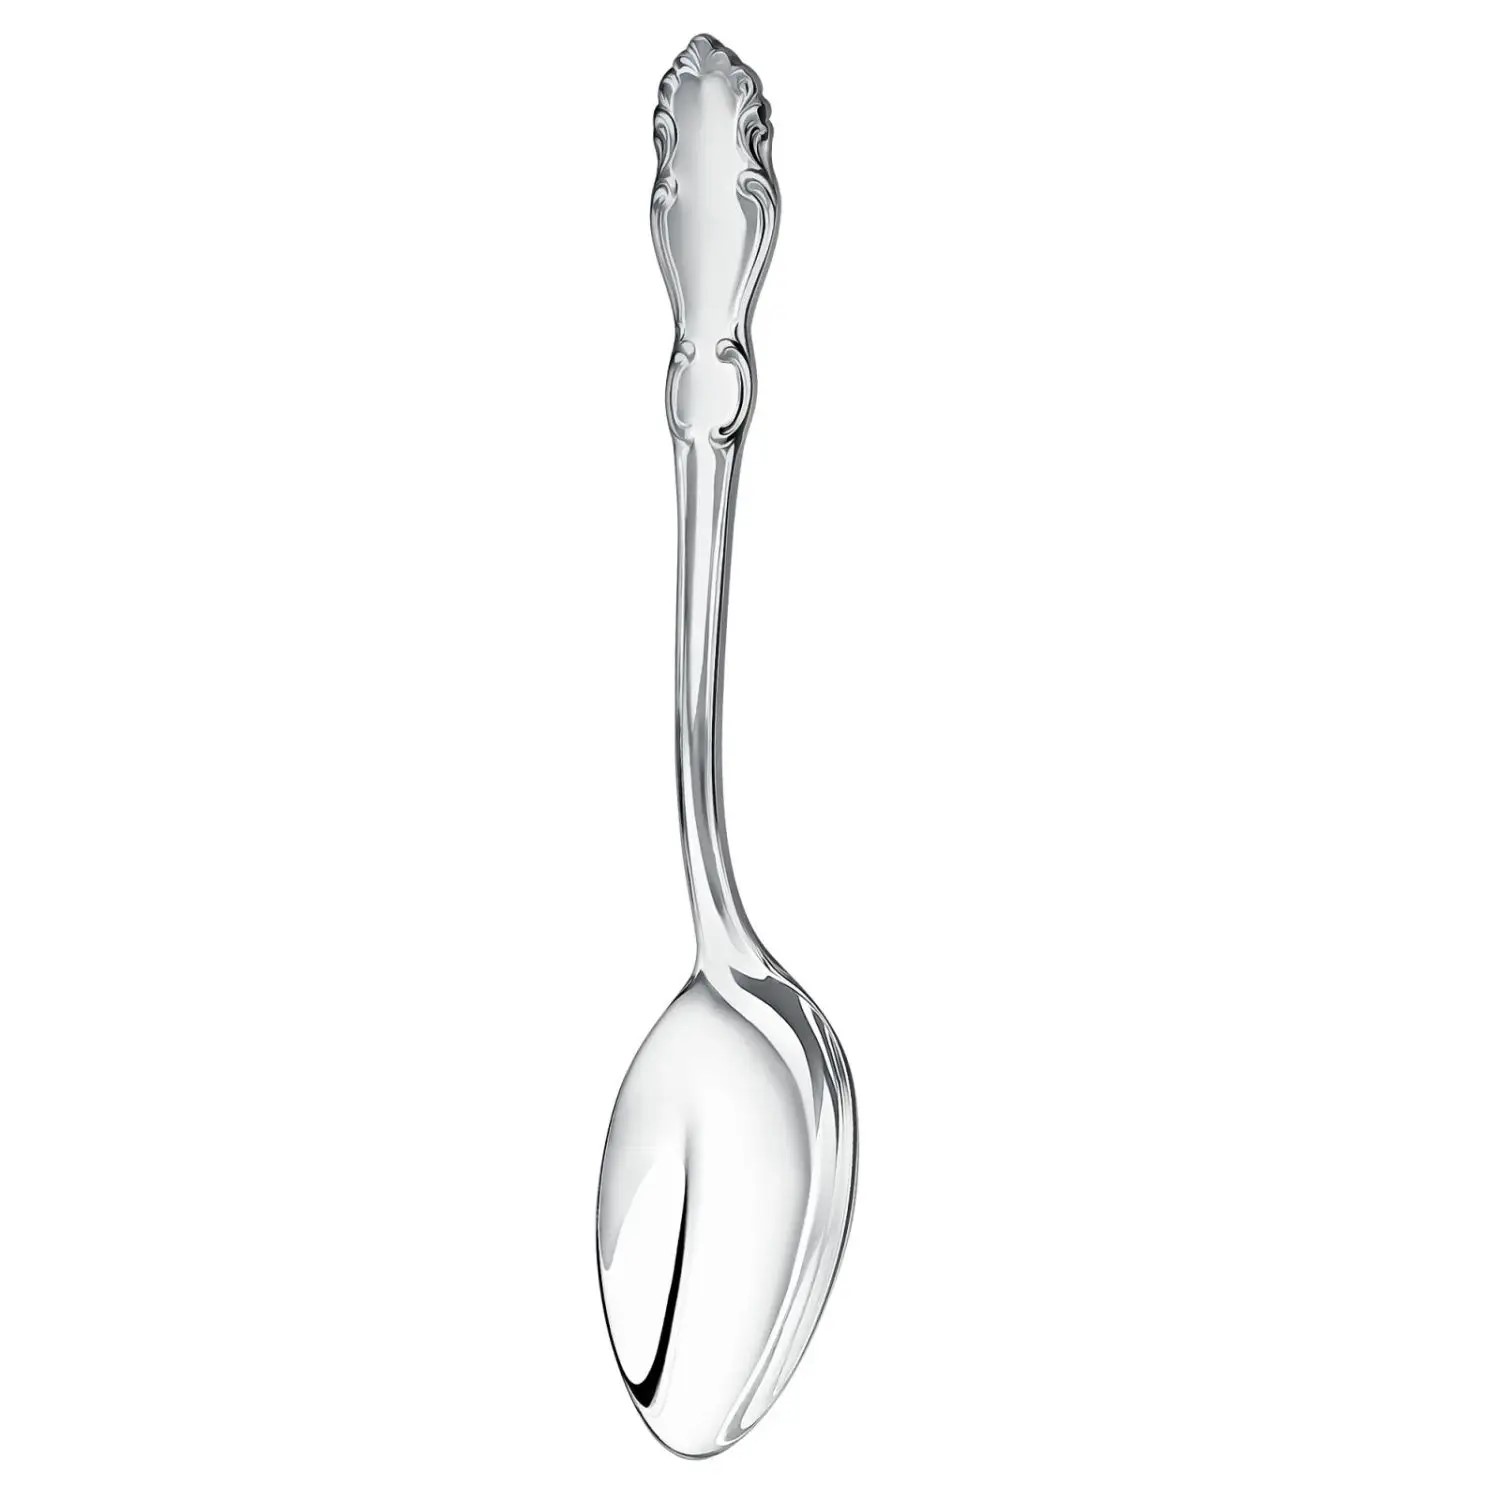 Table nickel silver spoons